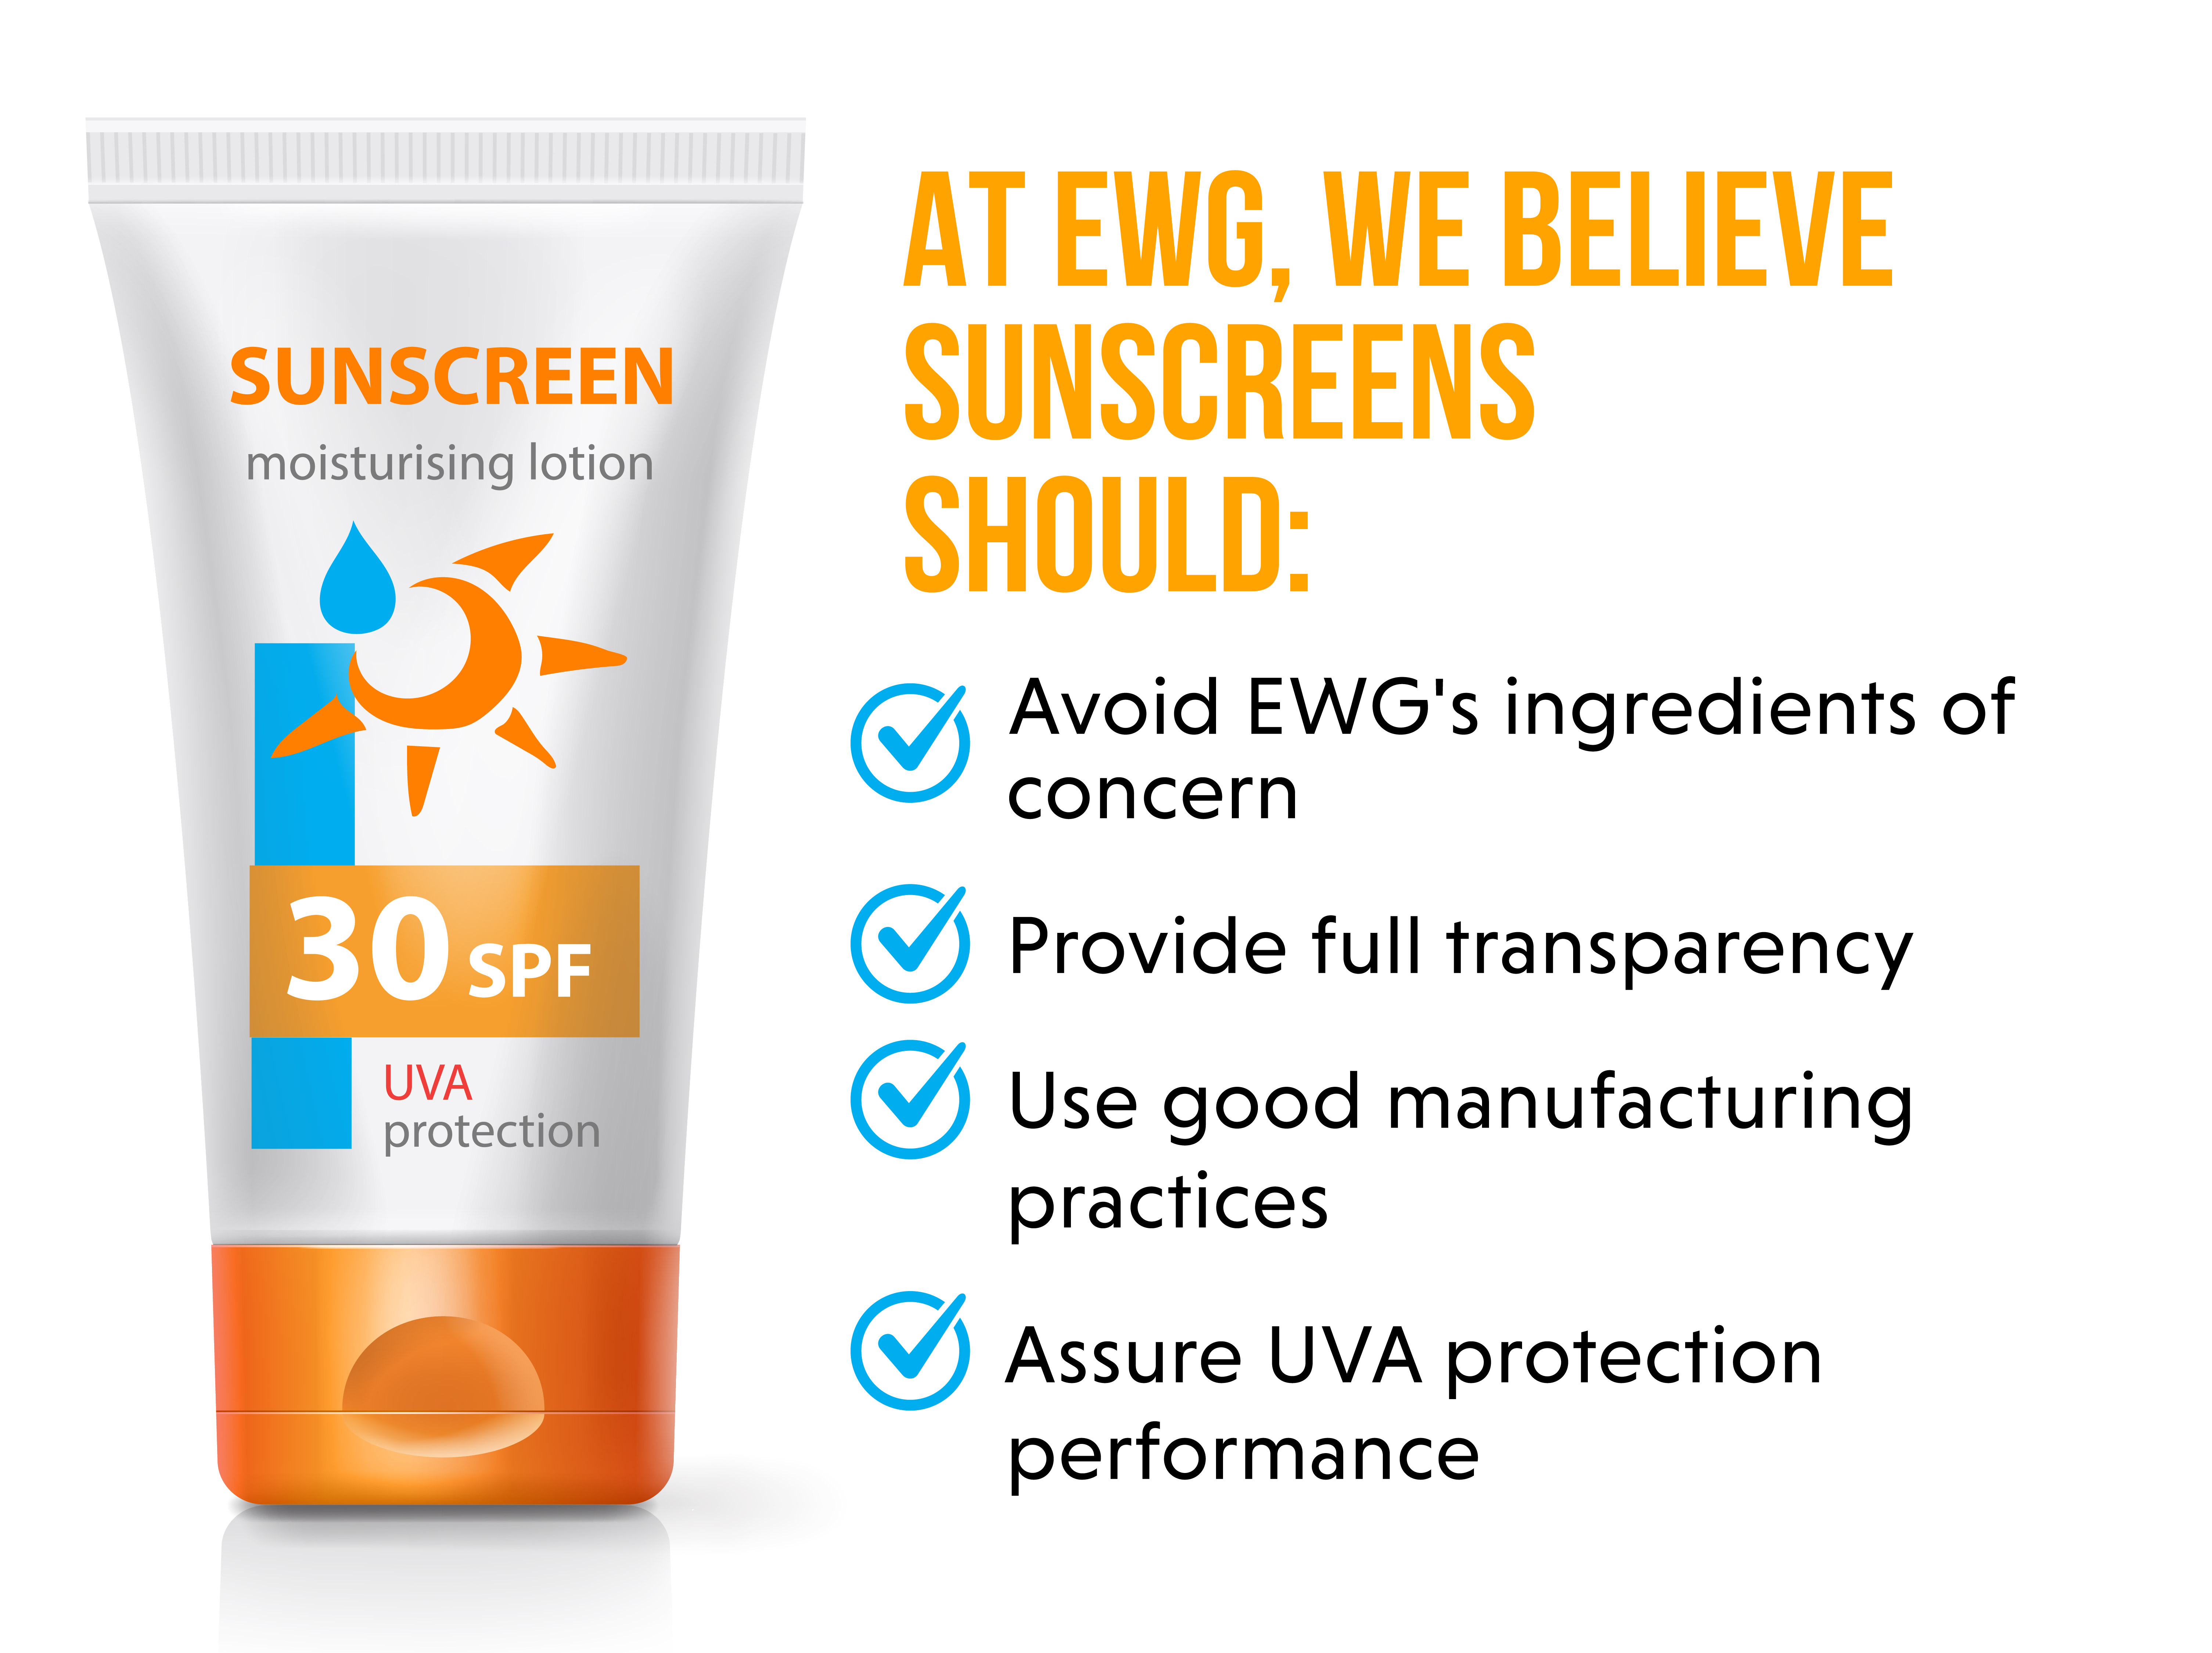 EWG Sun Safety Campaign